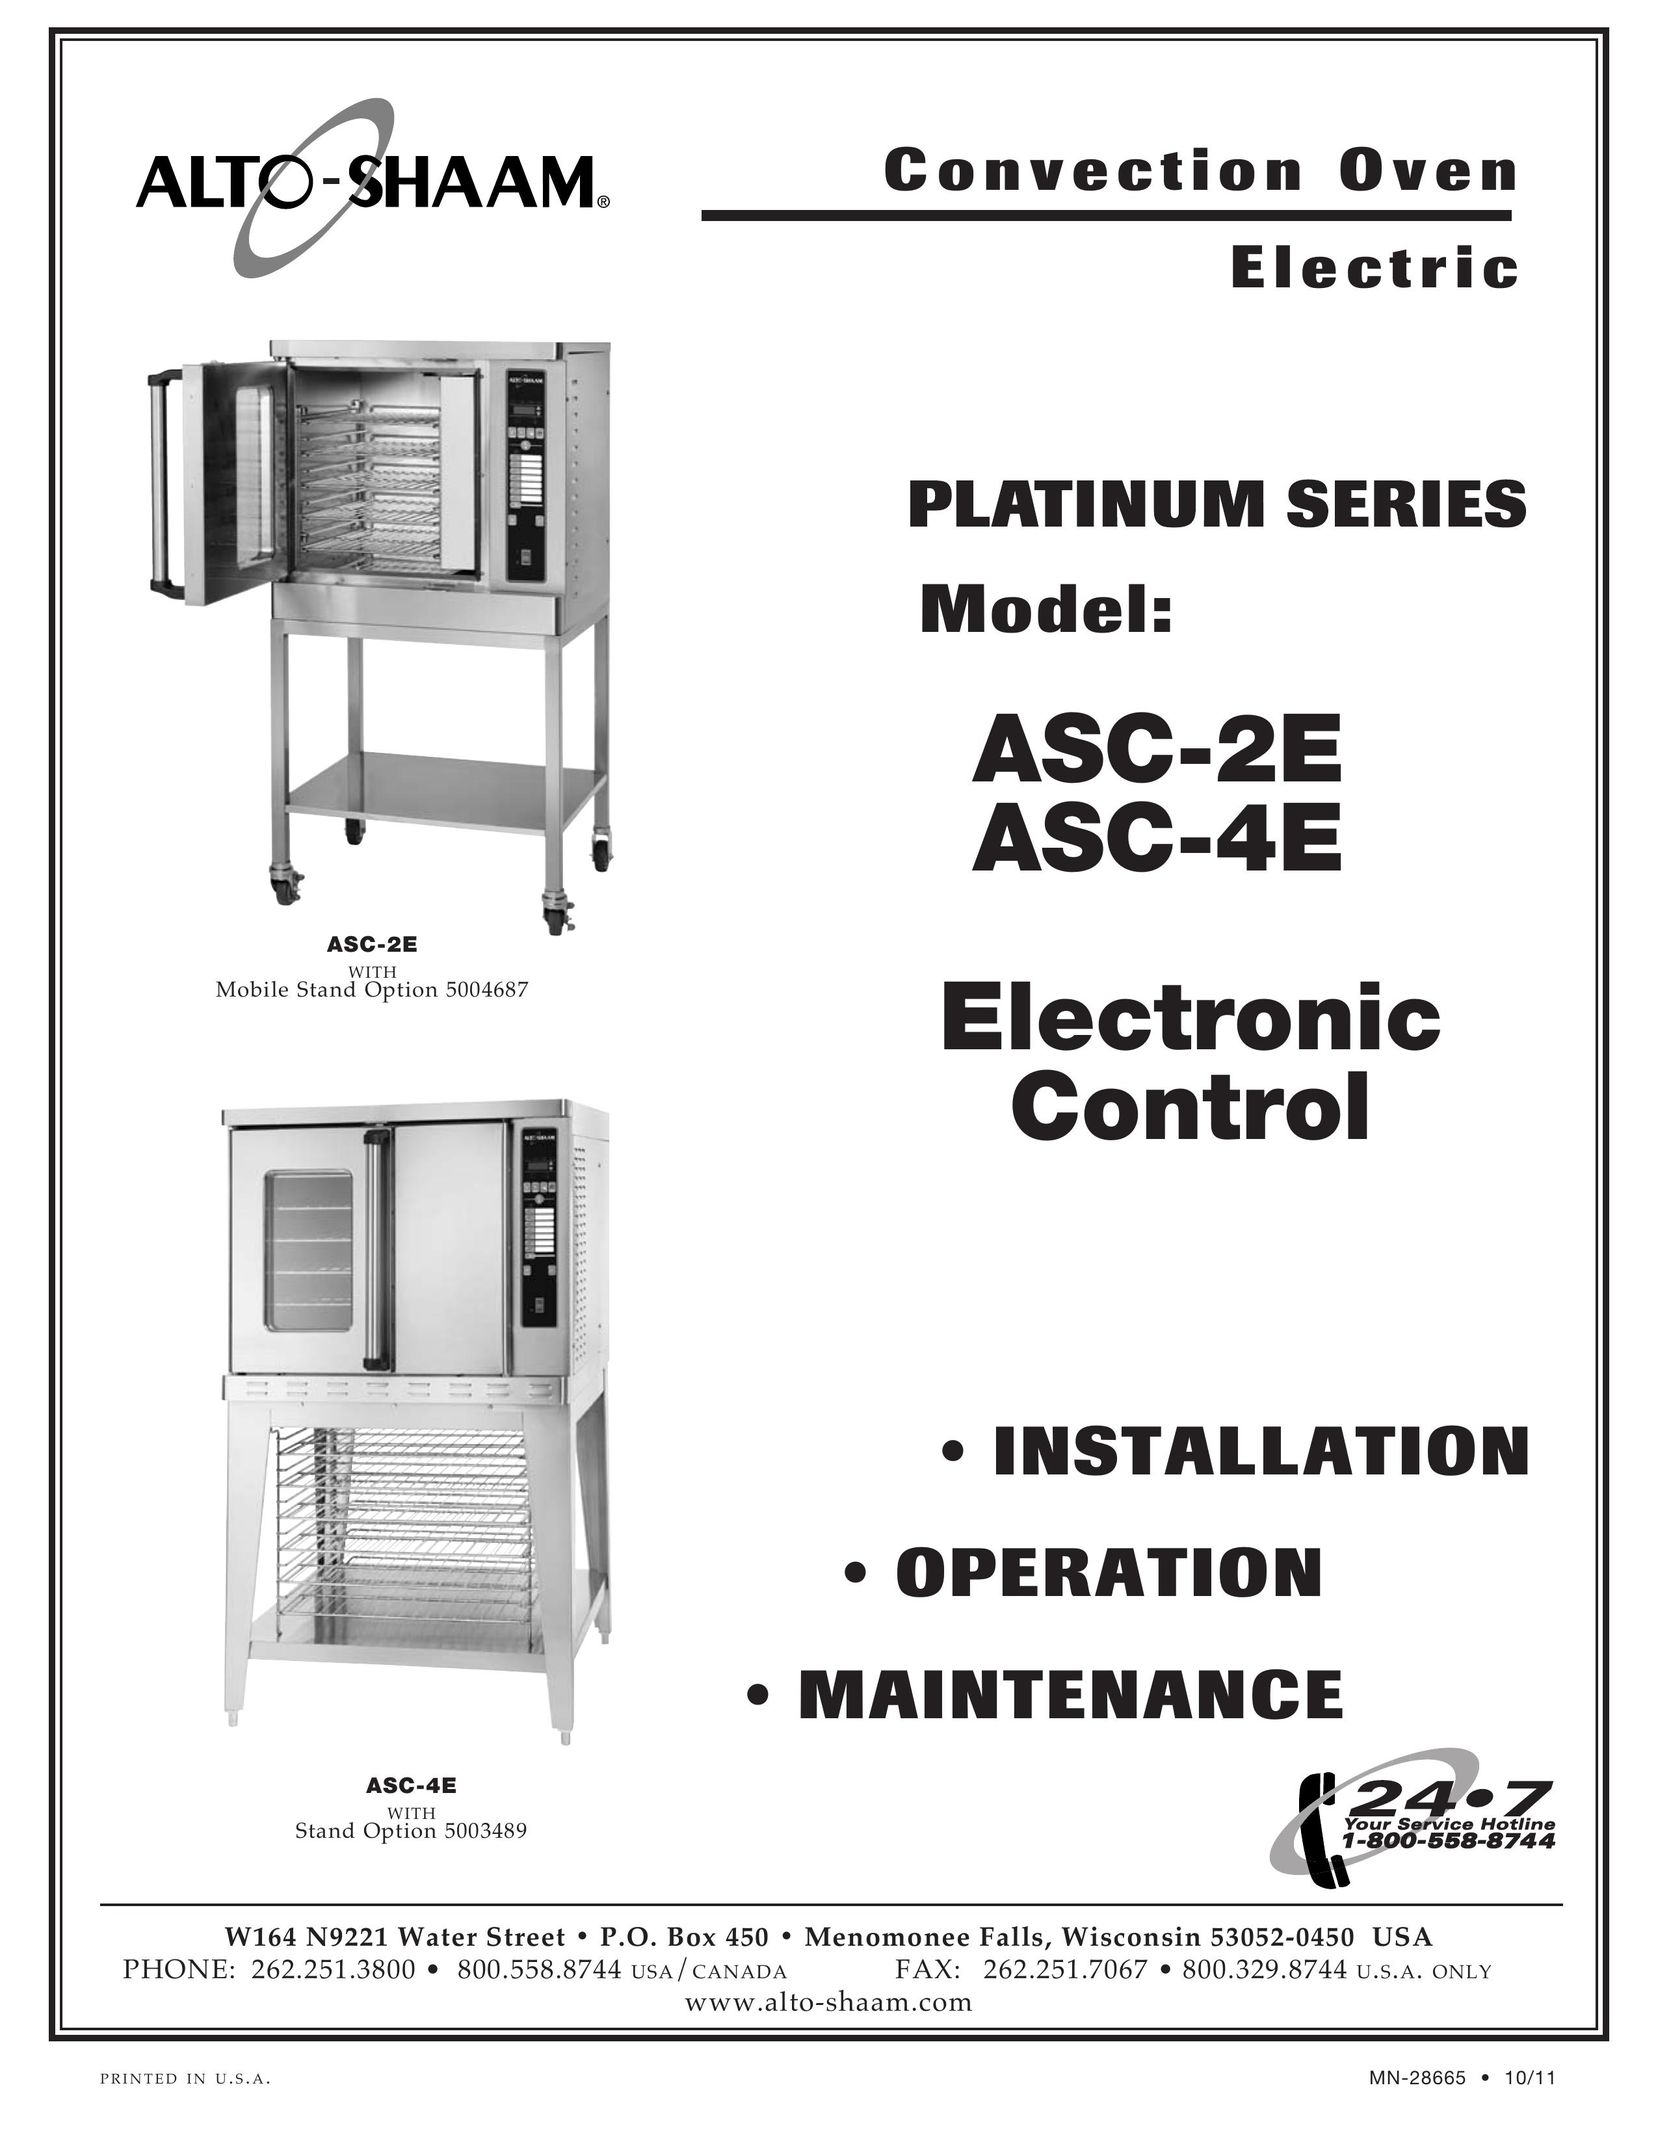 Alto-Shaam ASC-2E Convection Oven User Manual